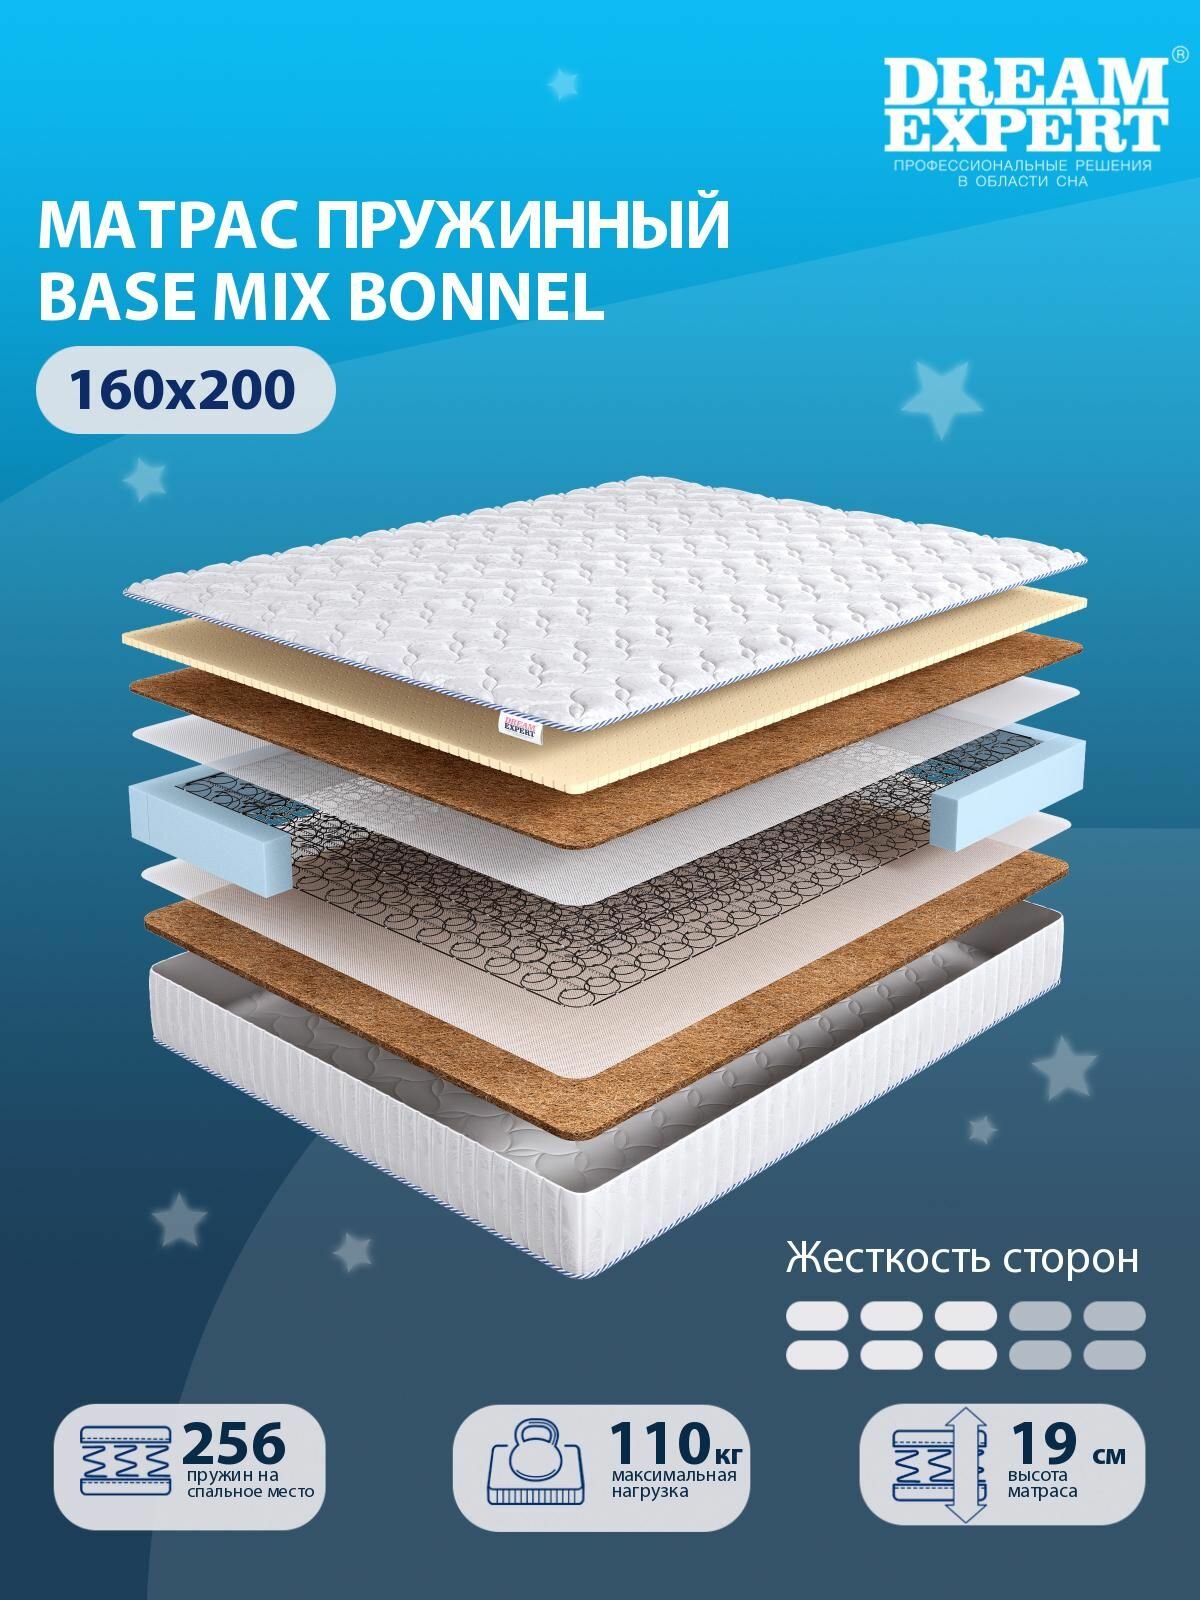 Матрас DreamExpert Base Mix Bonnel средней жесткости, двуспальный, зависимый пружинный блок, на кровать 160x200